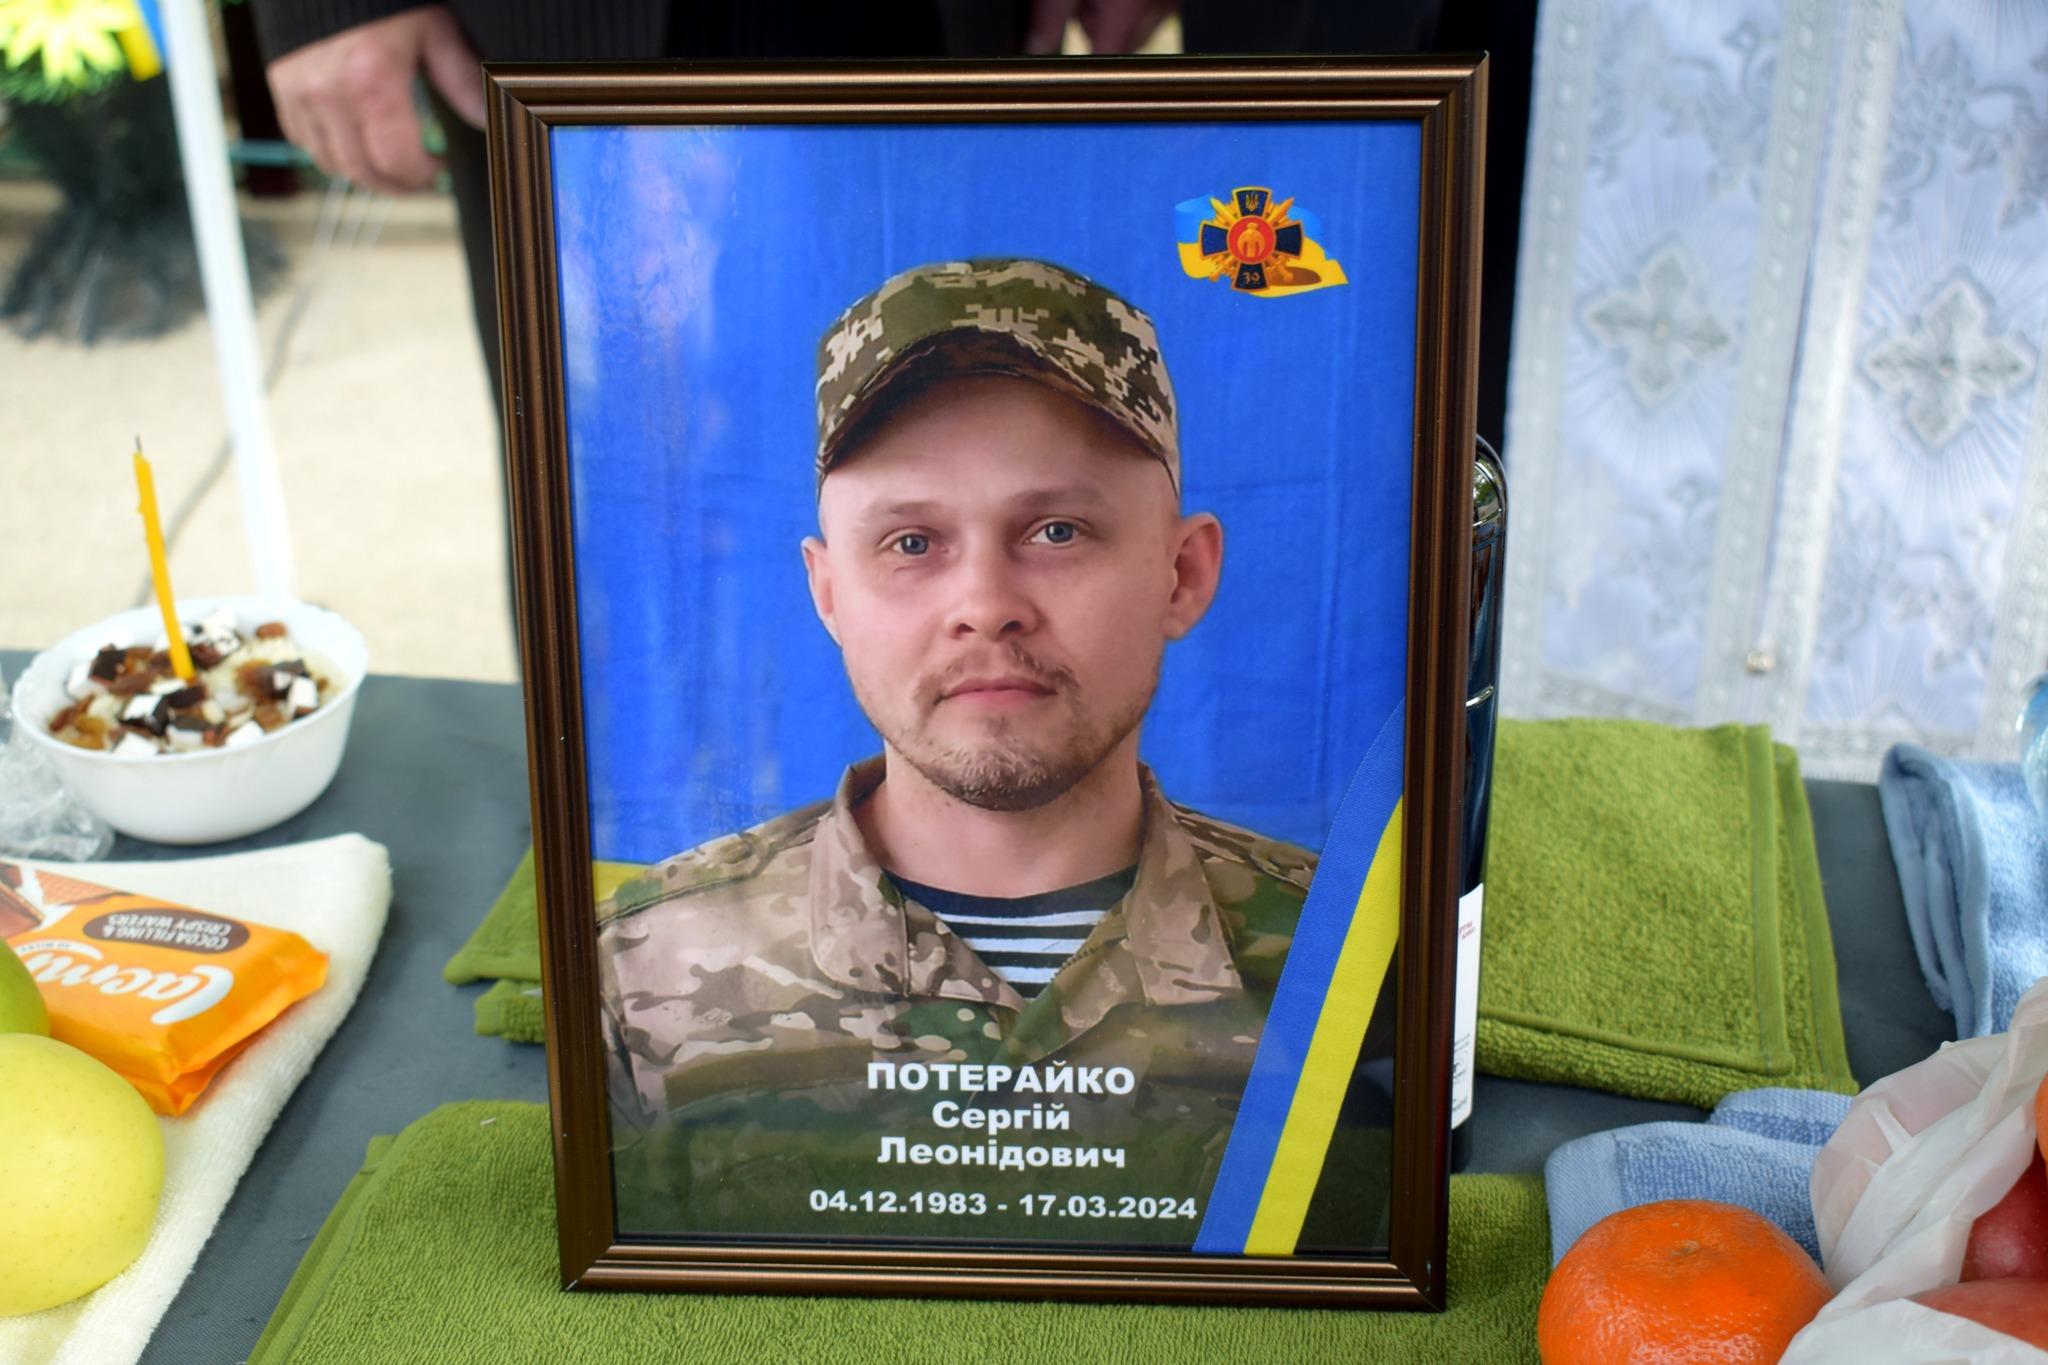 Сергій Потерайко загинув на фронті